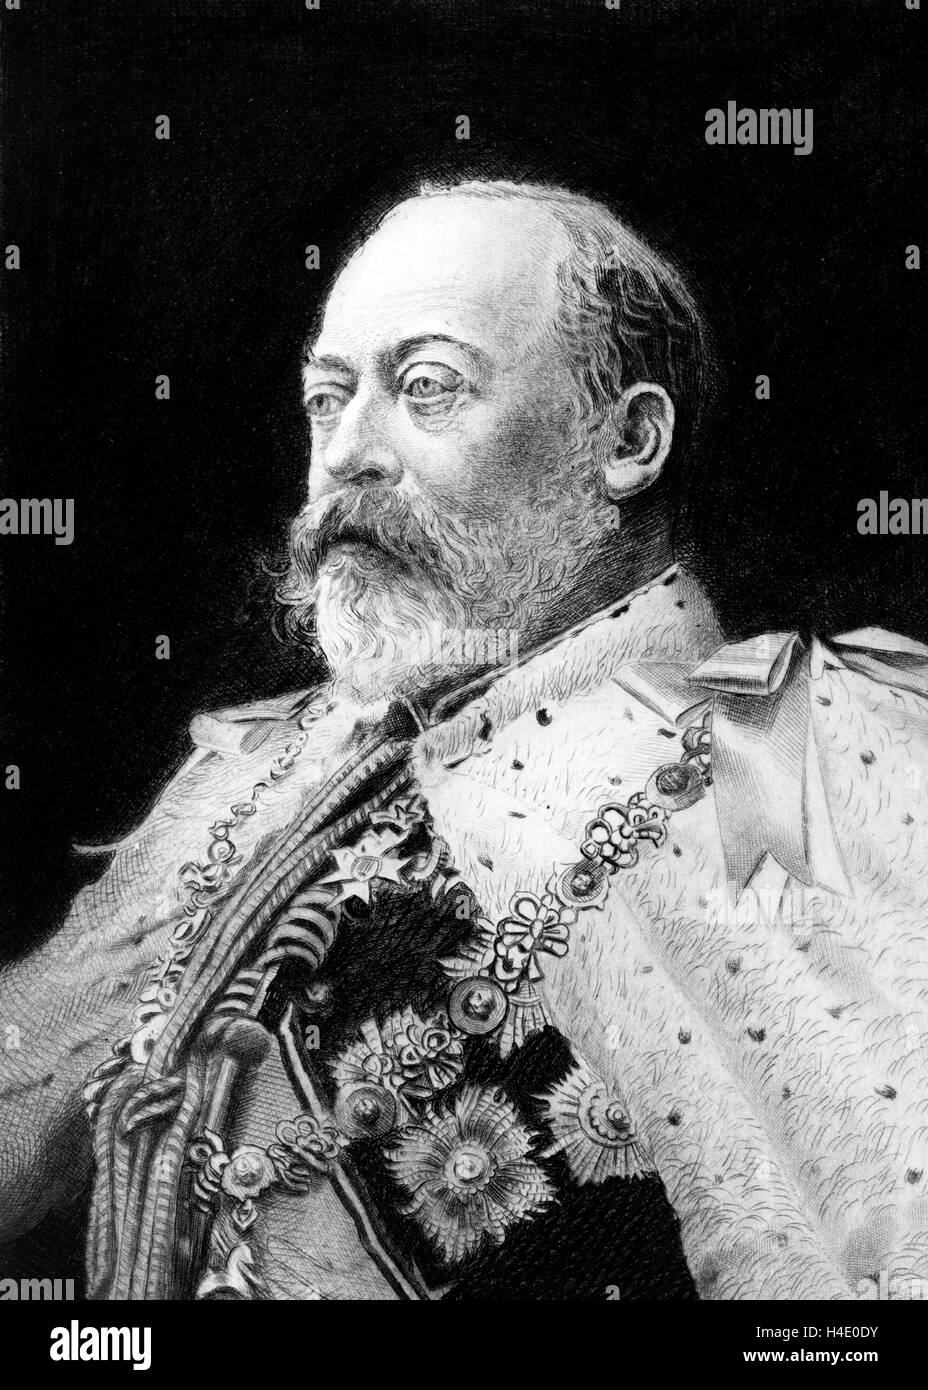 Edward VII. Retrato del Rey Eduardo VII del Reino Unido (1841-1910), quien reinó desde 1901 hasta su muerte en 1910. Grabado por Franz Raubicheck, de una fotografía tomada en 1901. Foto de stock